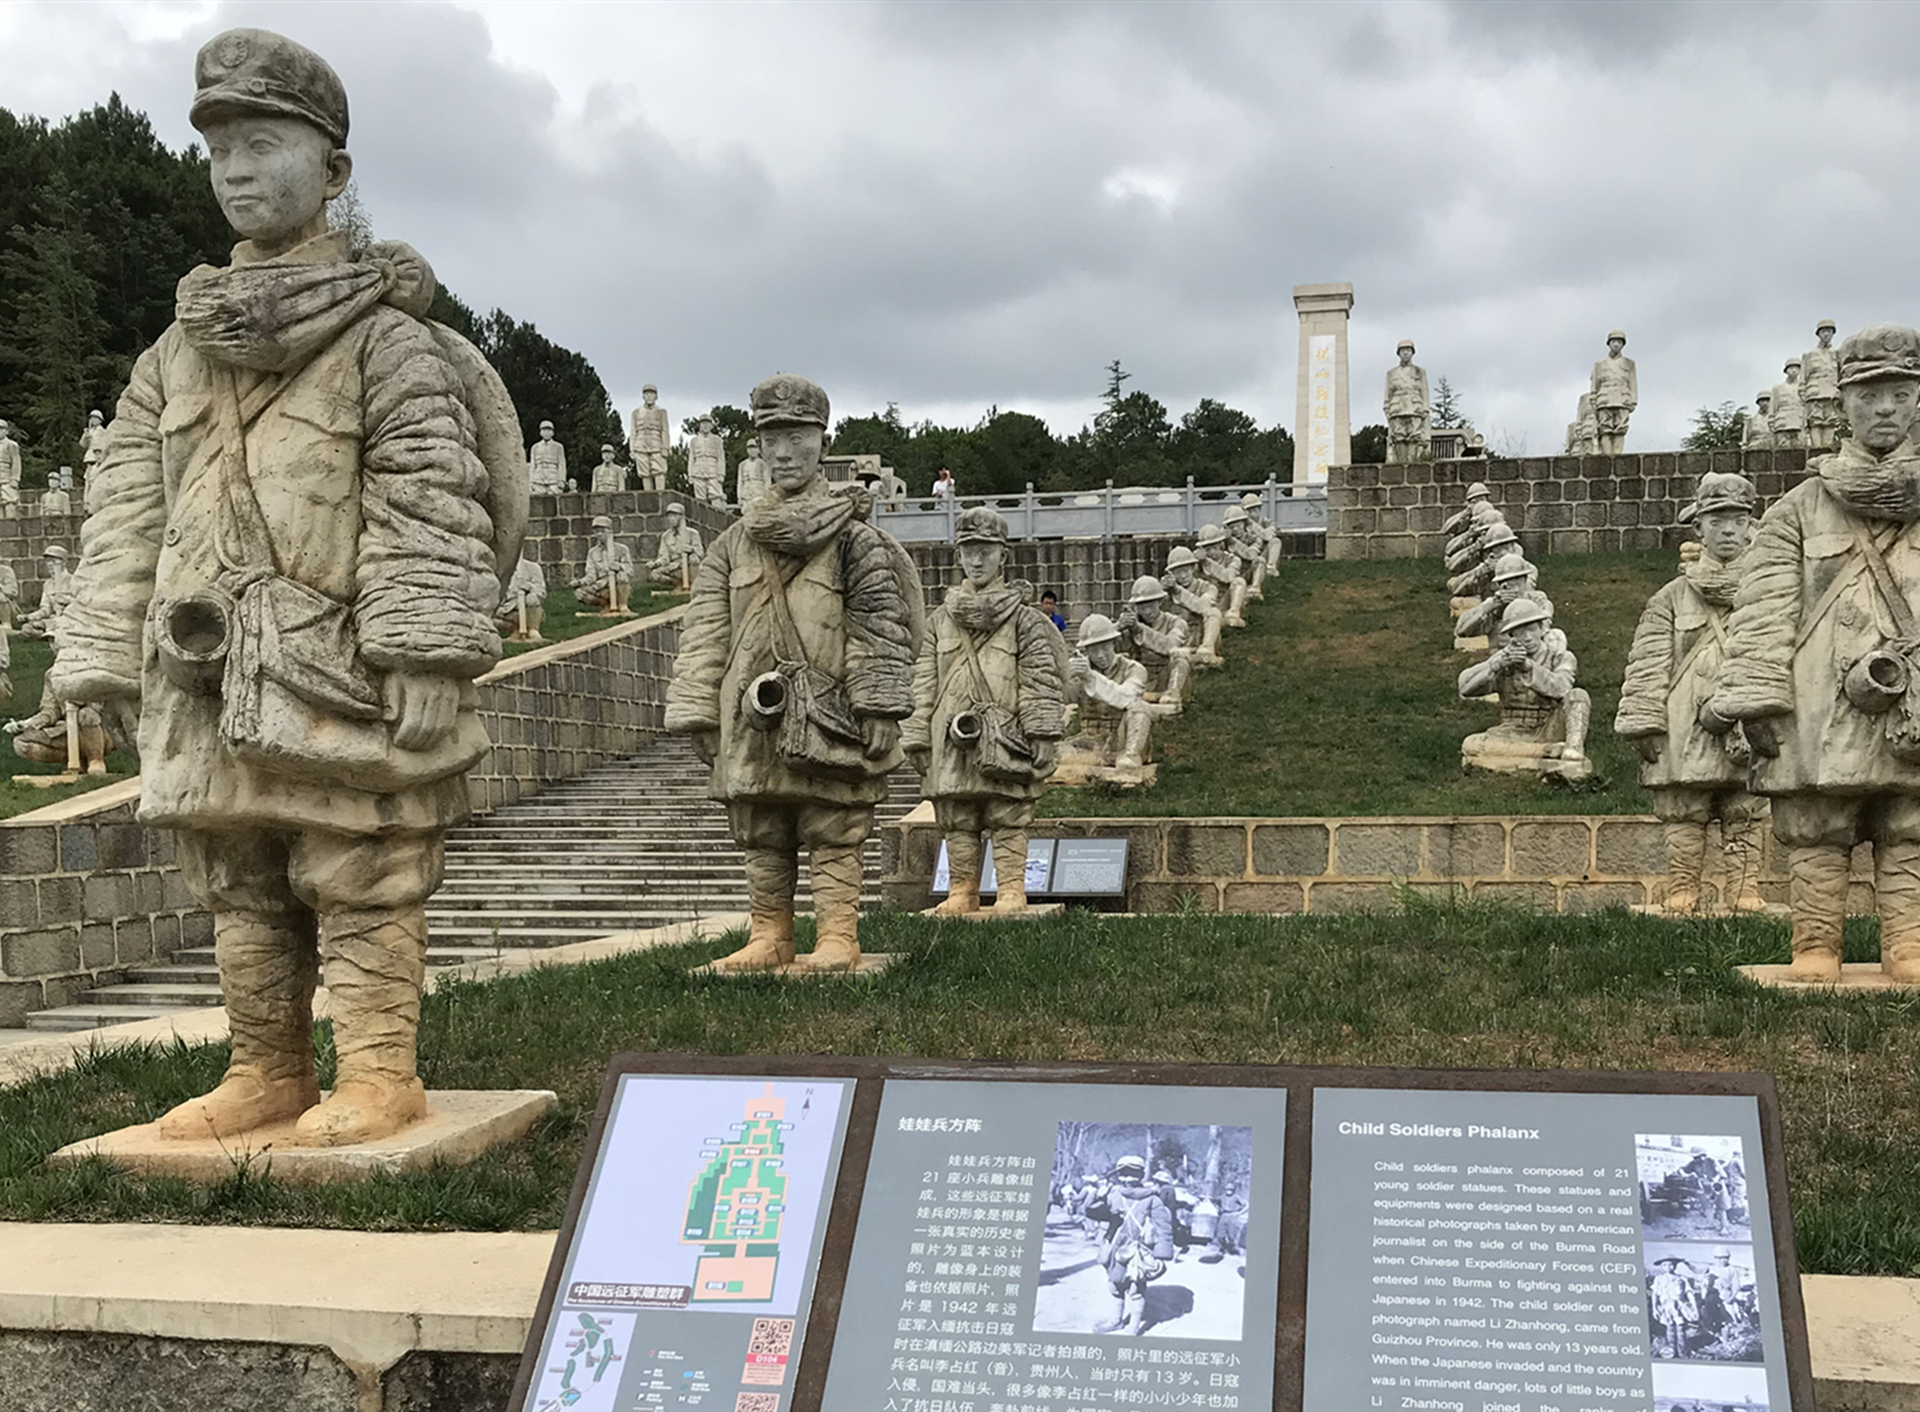 这些被称为当代兵马俑的中国远征军兵团群雕,是由雕塑家李春华历时